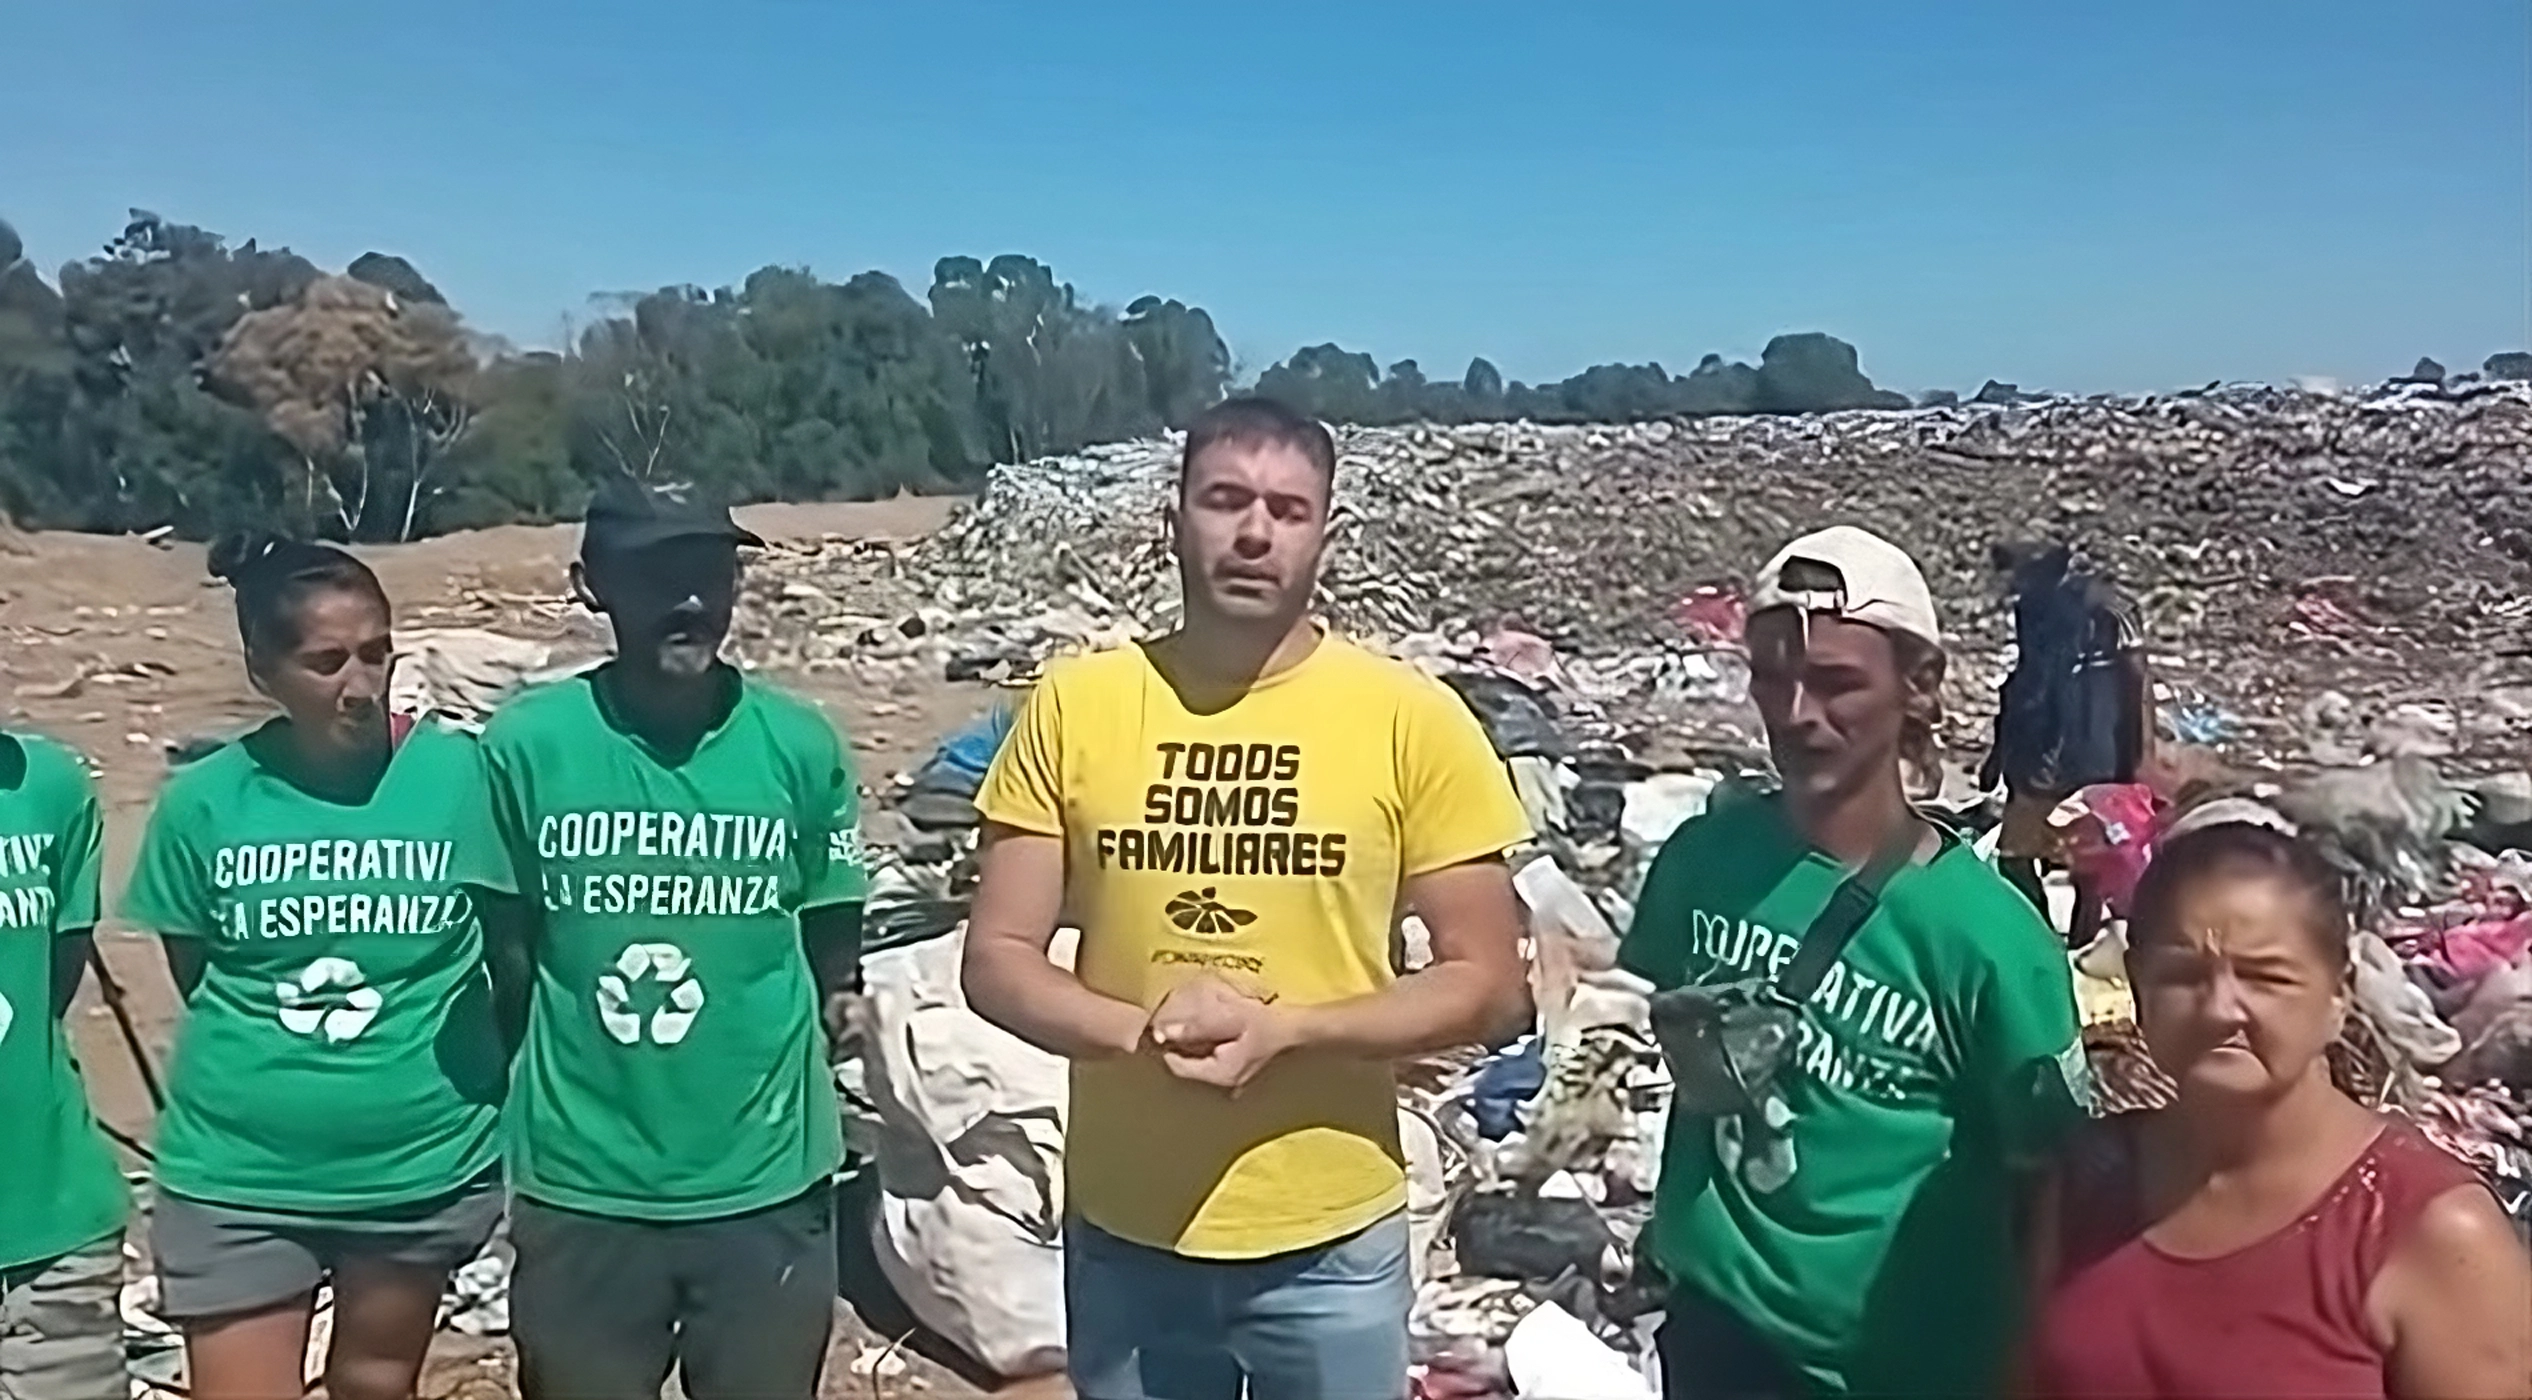 Mariani defendió a los recicladores ‘Se levantan a las 6 de la mañana a laburar, en las peores condiciones’